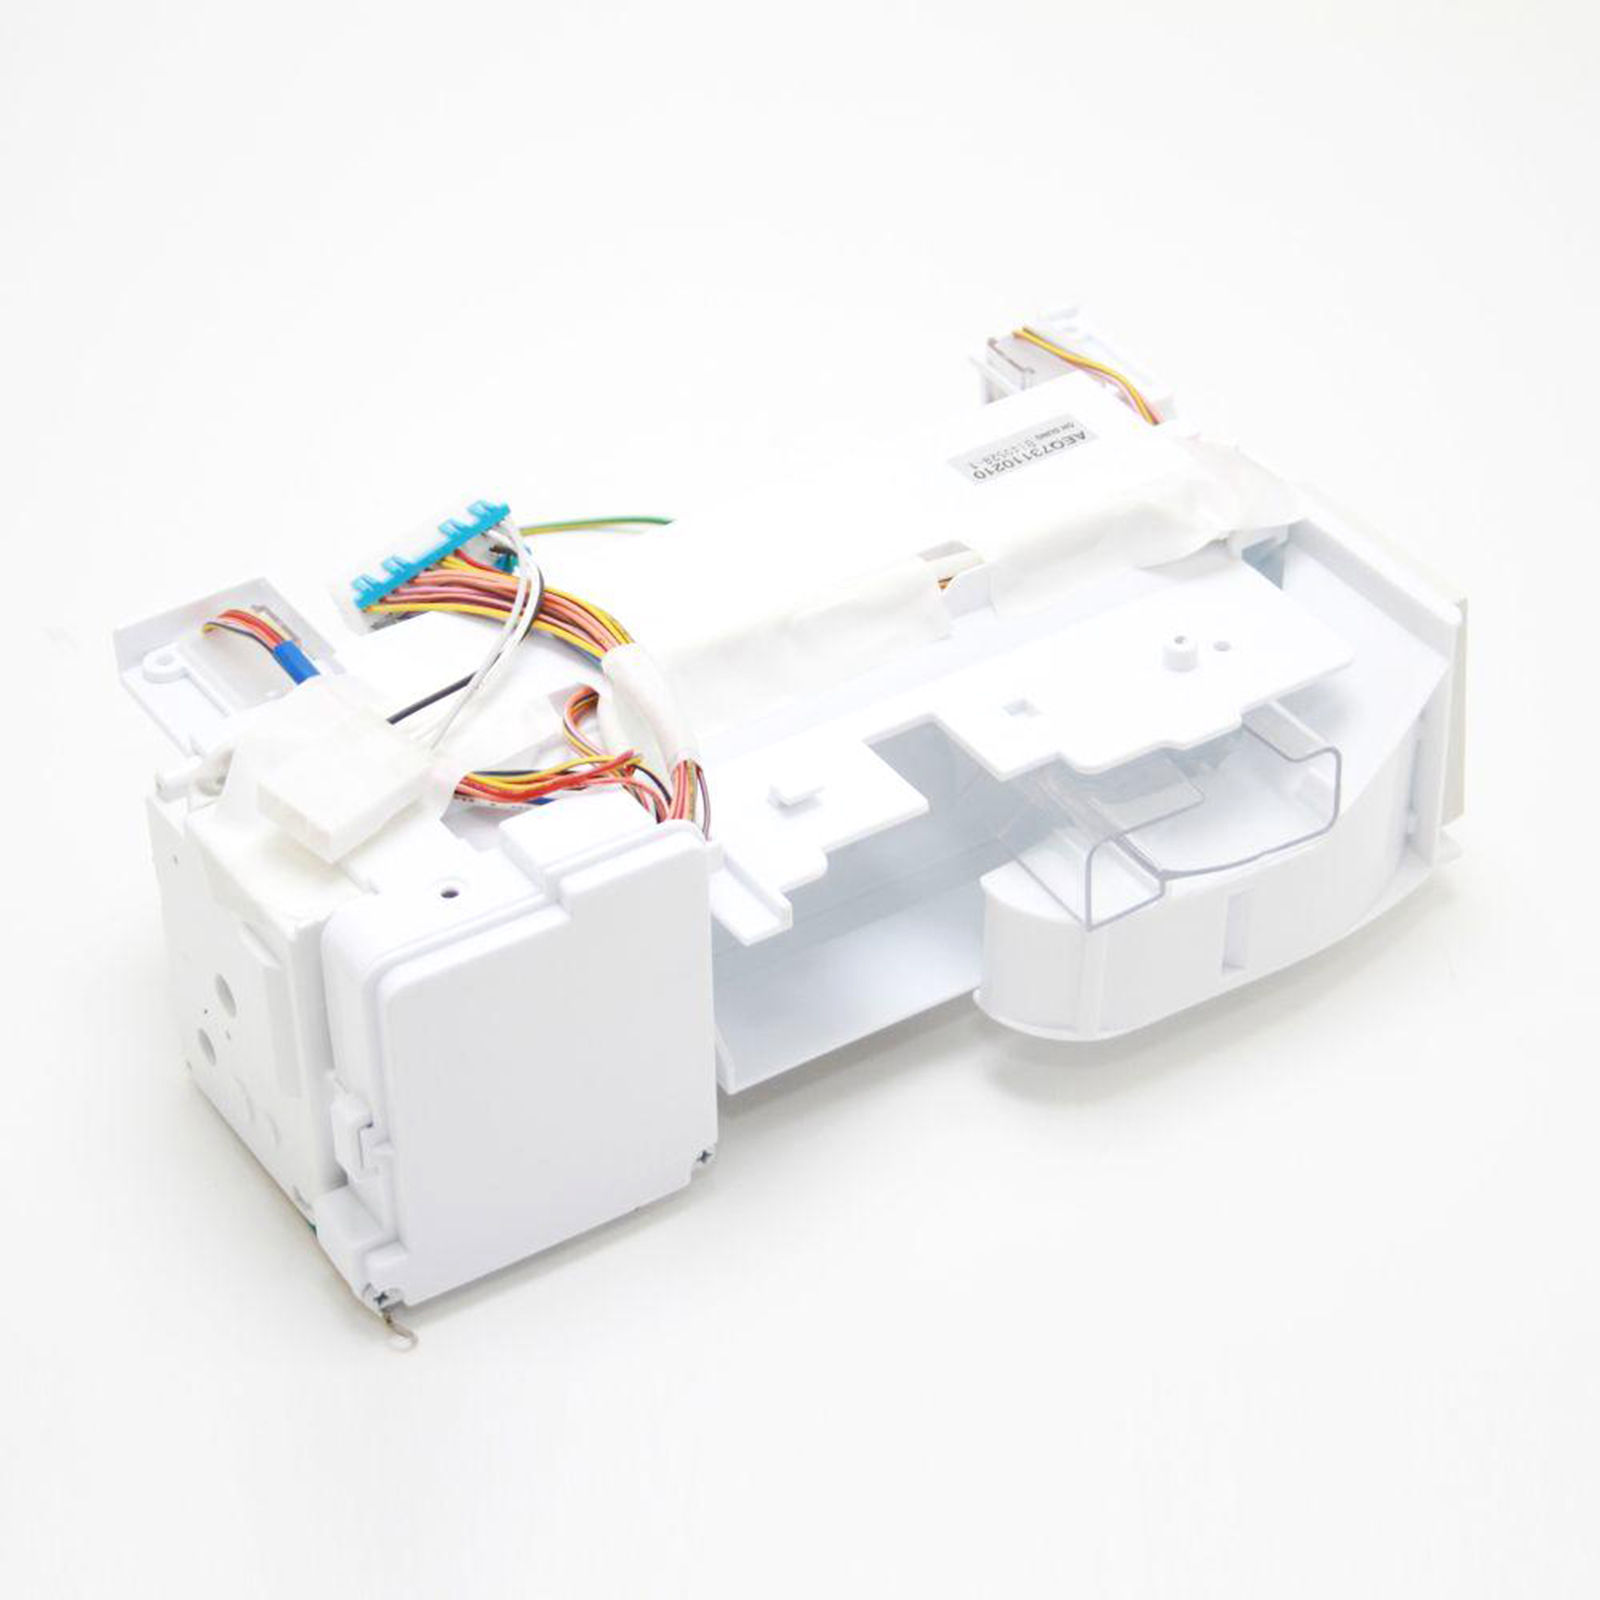 LG ZIDN3J3XD6 Refrigerator Ice Maker Assembly Kit